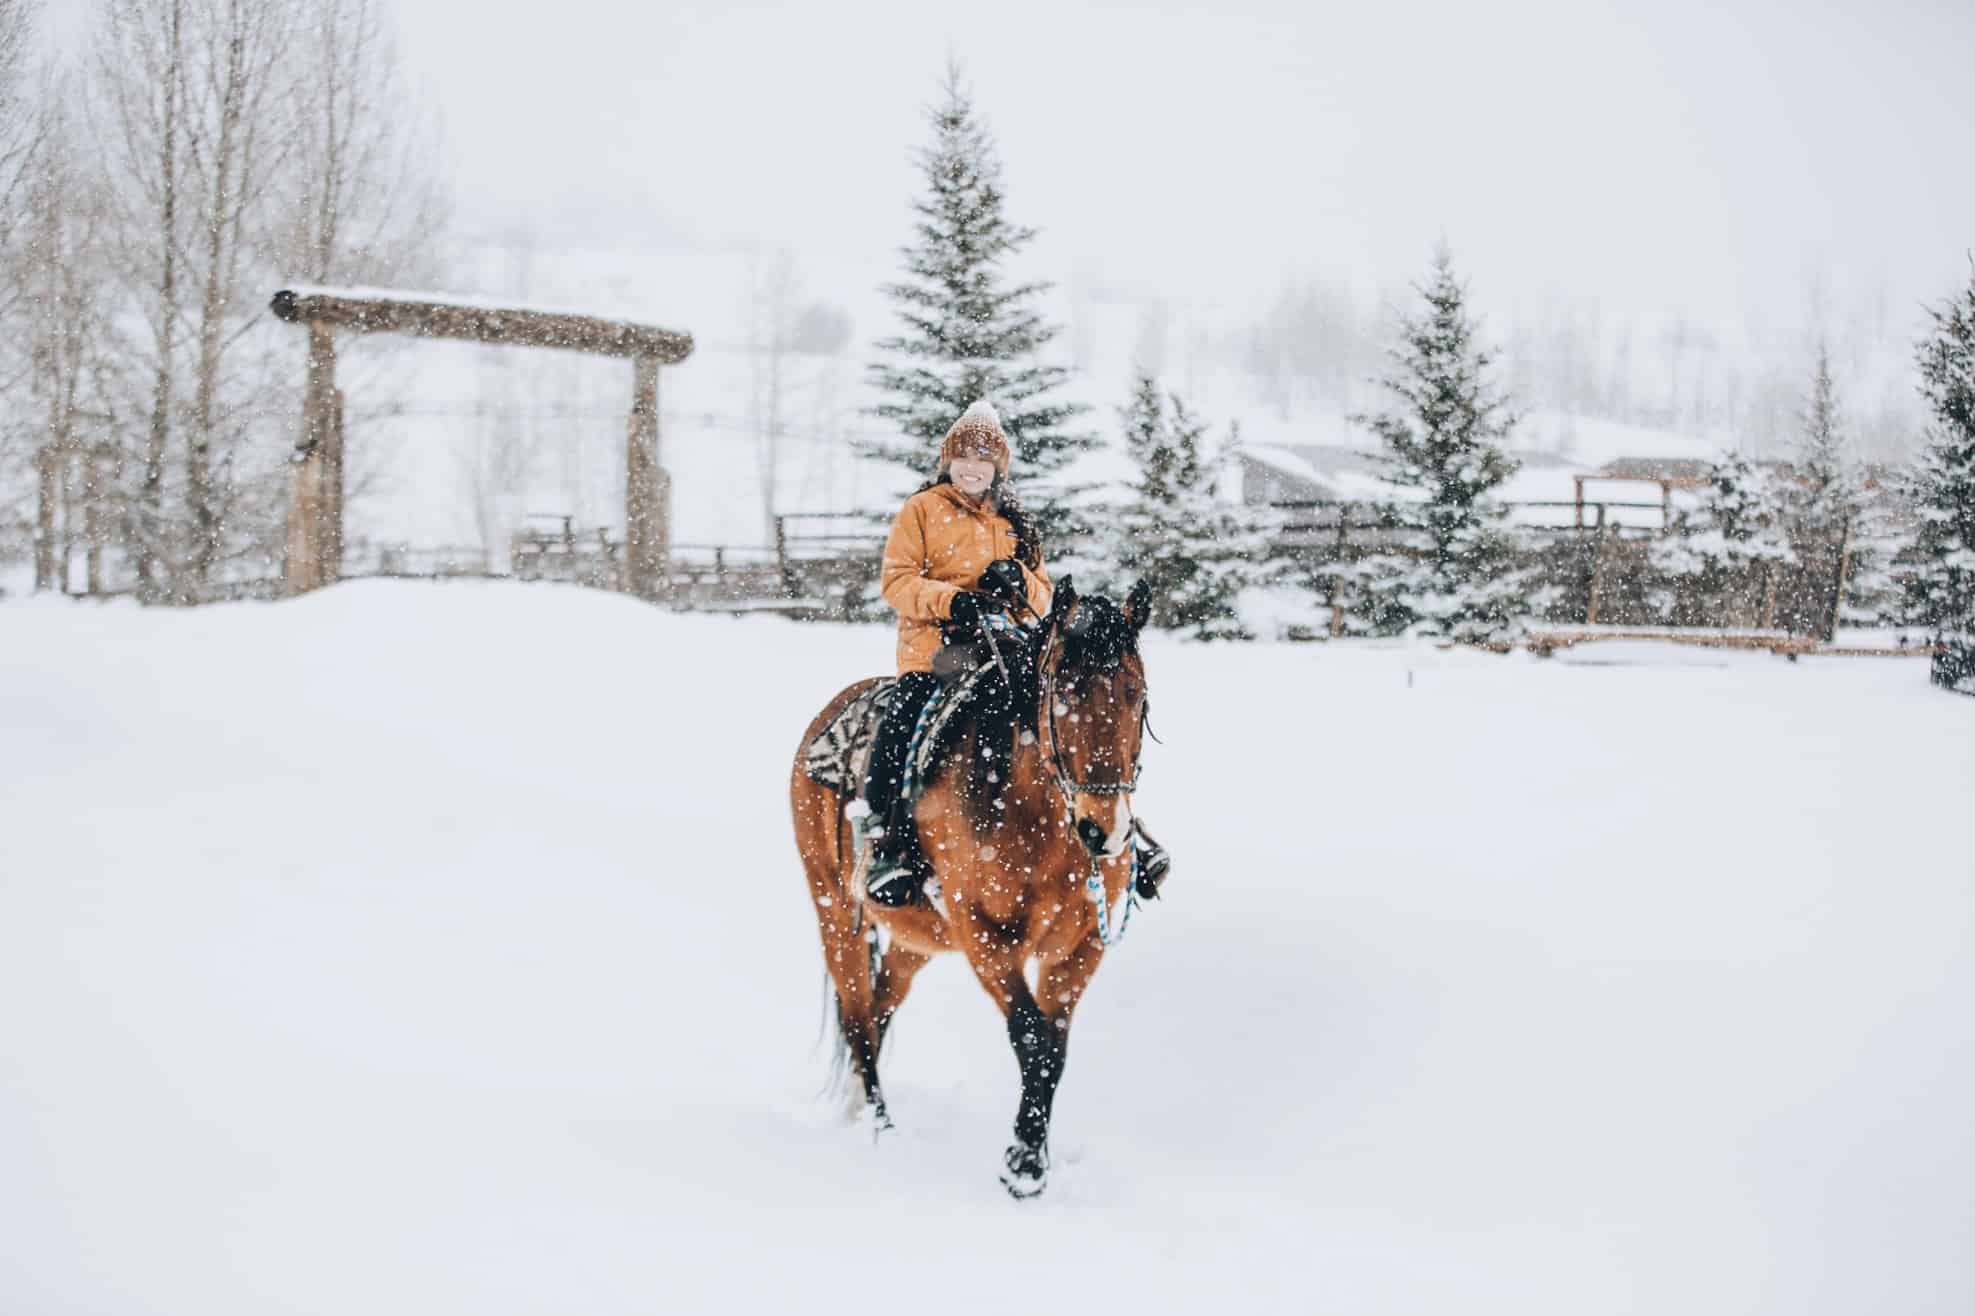 Kids winter horseback riding - Vista Verde Colorado